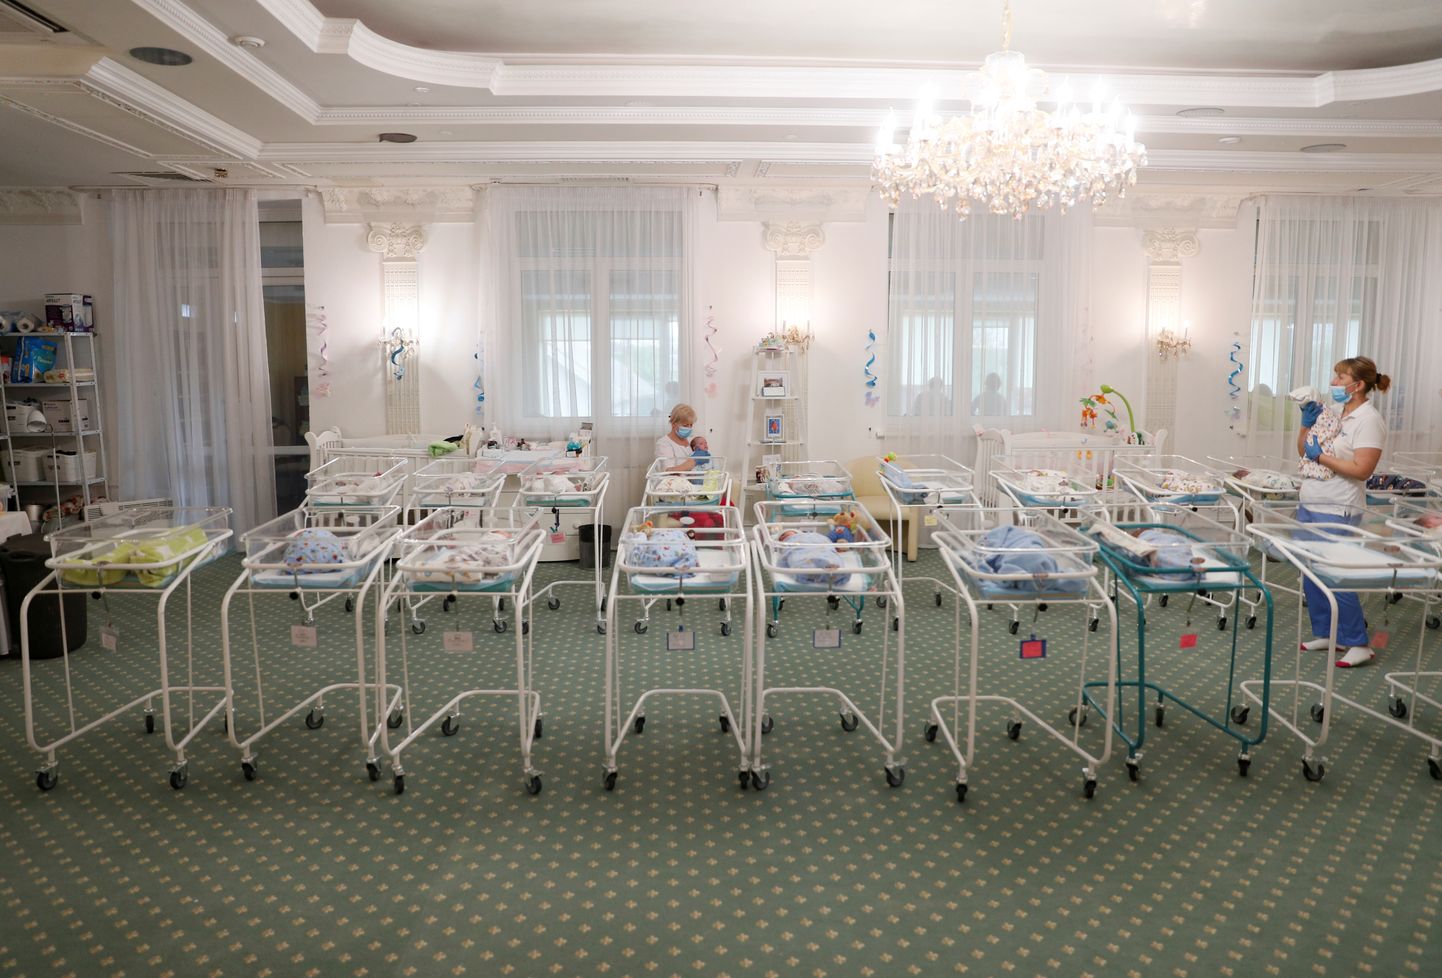 Ettevõtte BioTexCom hubases haiglas ootab pandeemia tõttu vanematega kohtumist 51 surrogaatema abil sündinud last.